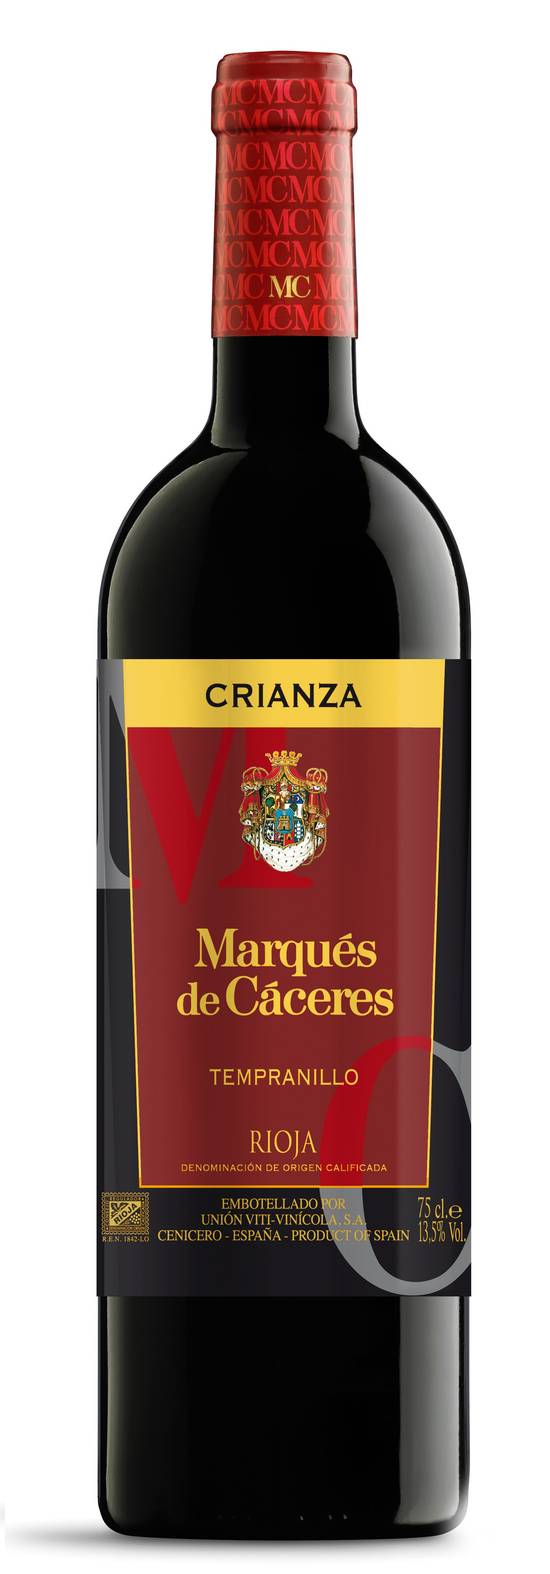 Marqués de Cáceres - Crianza do rioja (750 ml)